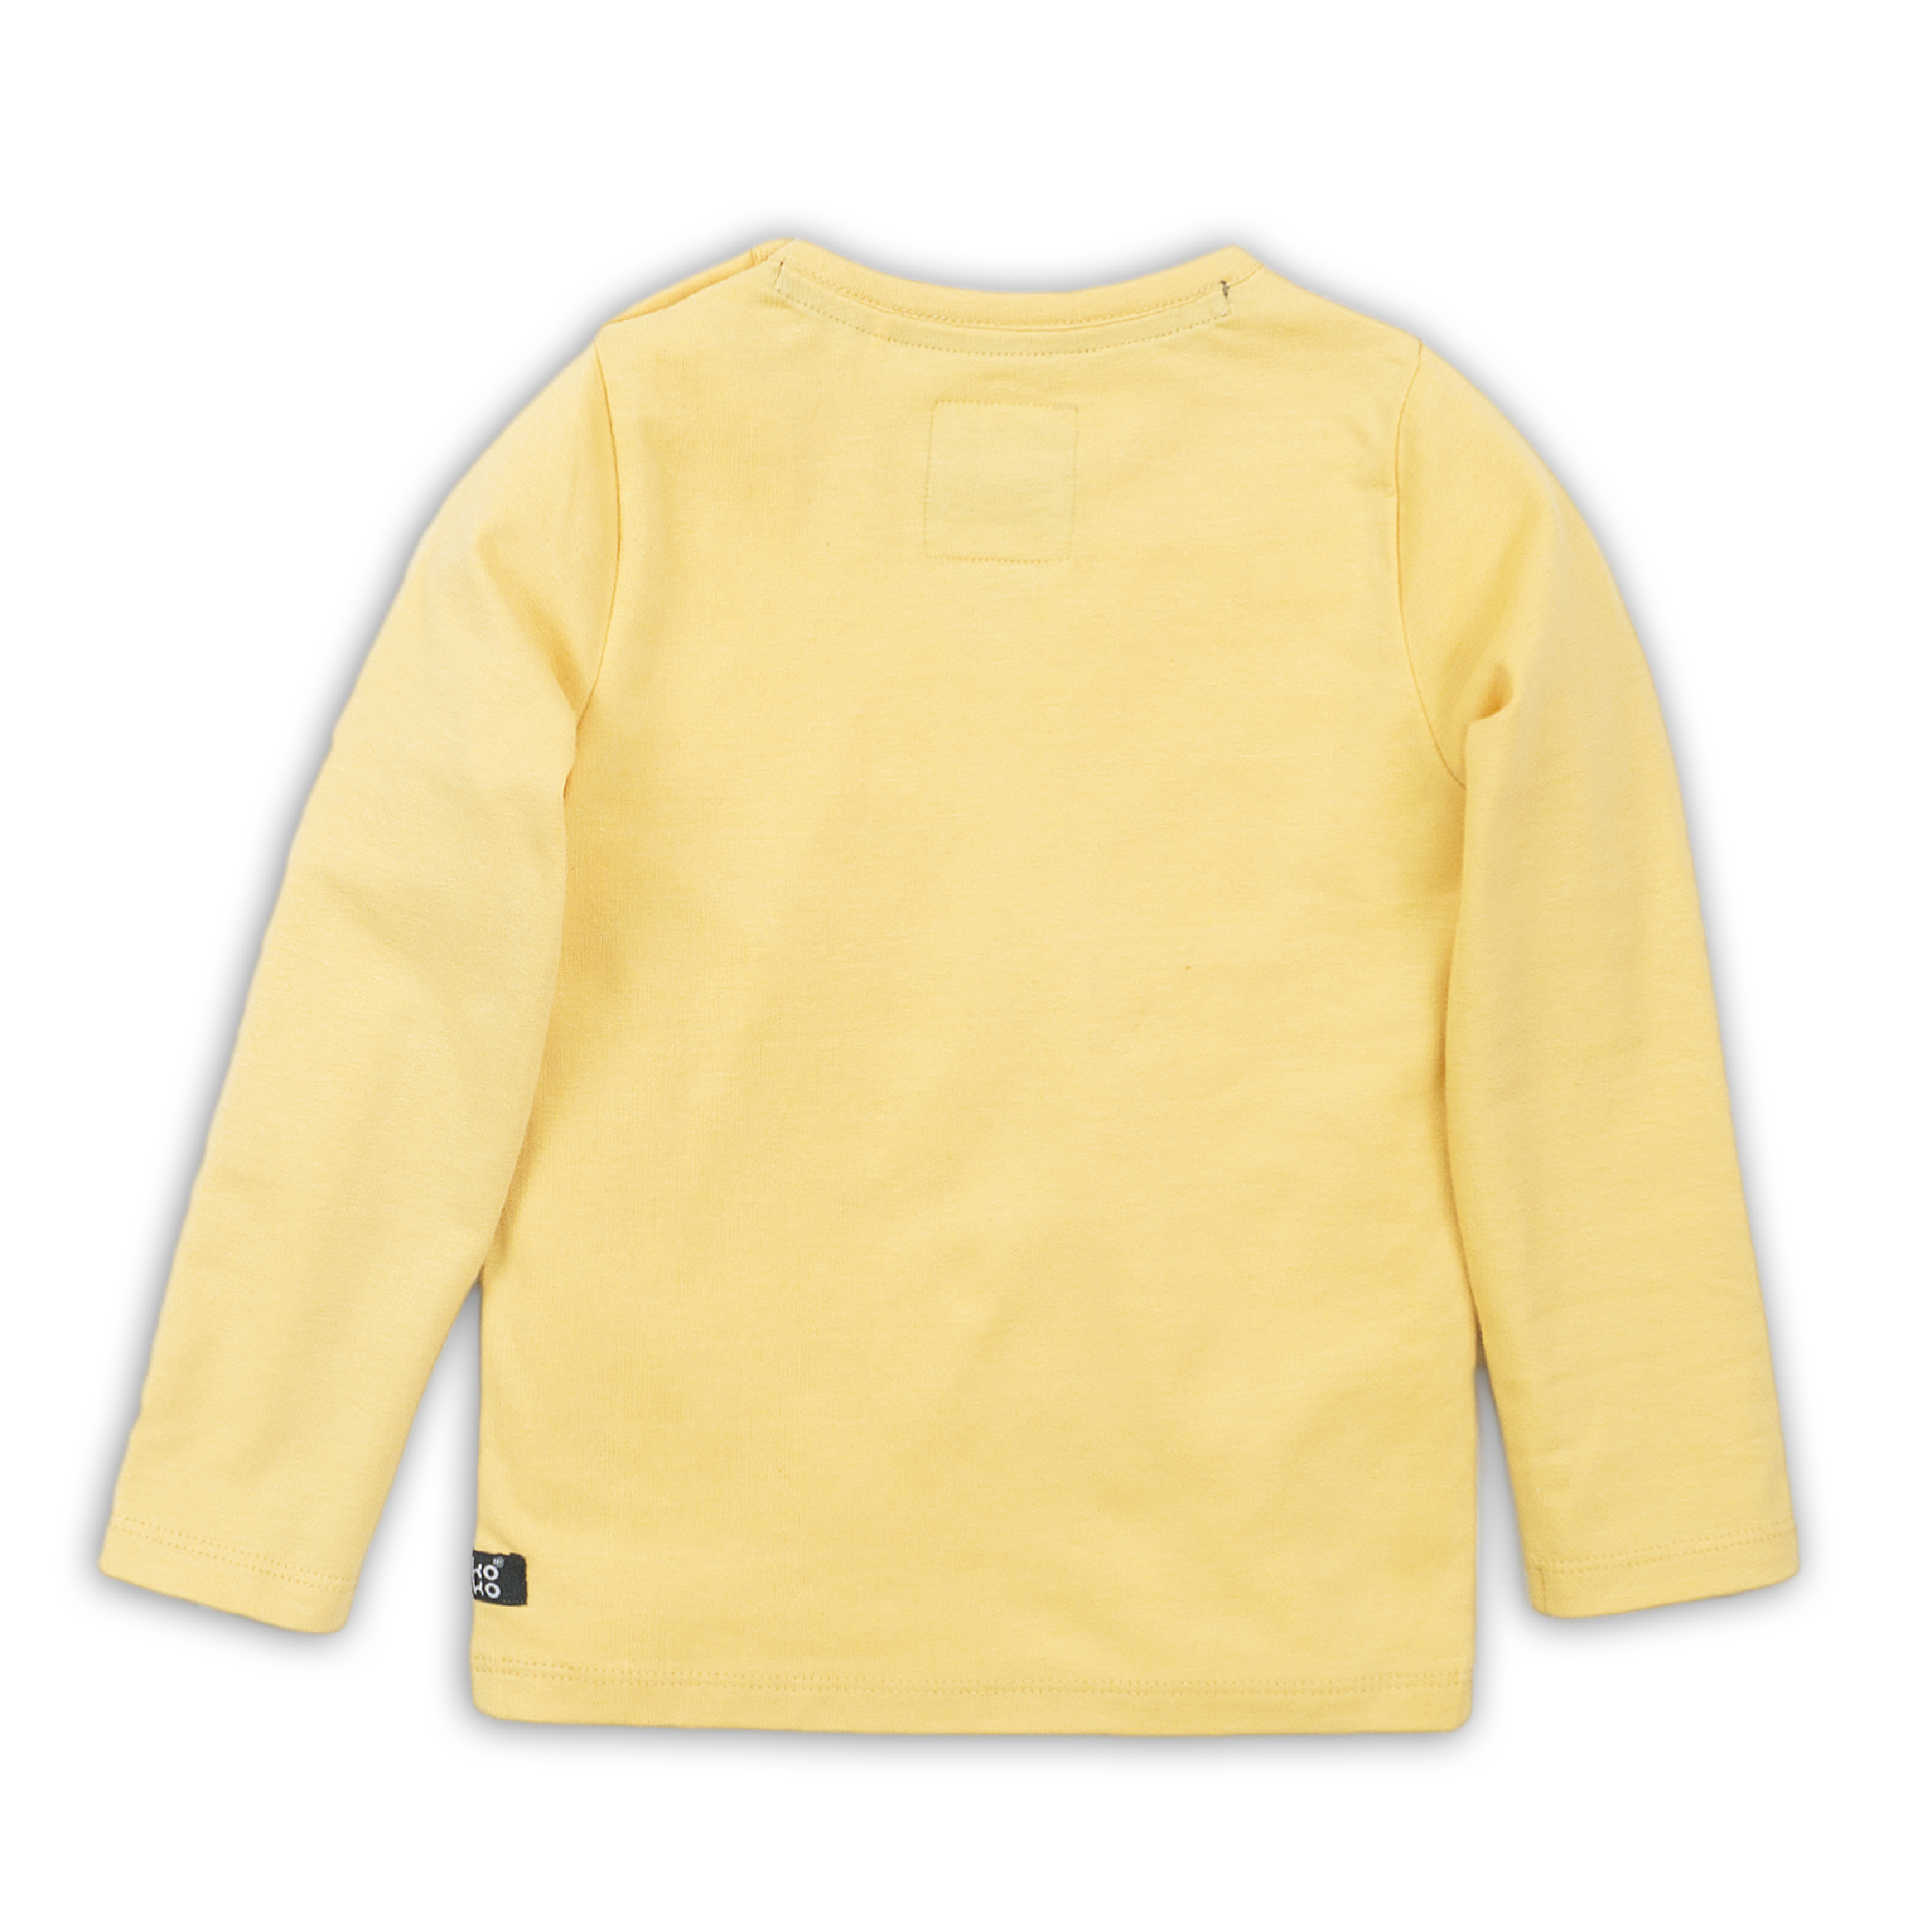 Jongens T-shirt ls van Koko Noko in de kleur Yellow in maat 86.